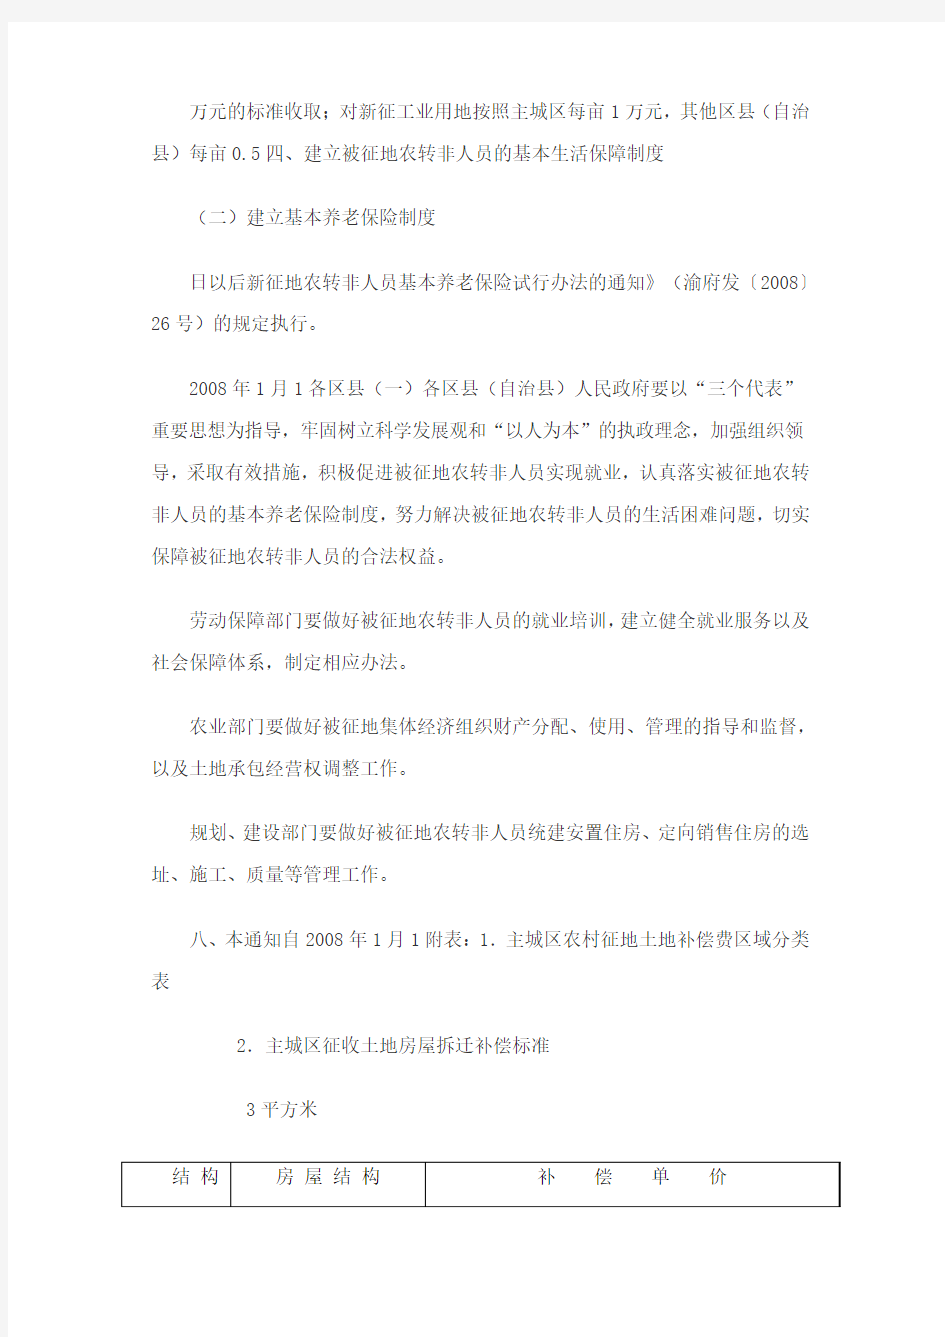 重庆市人民政府关于调整征地补偿安置政策有关事项的通知